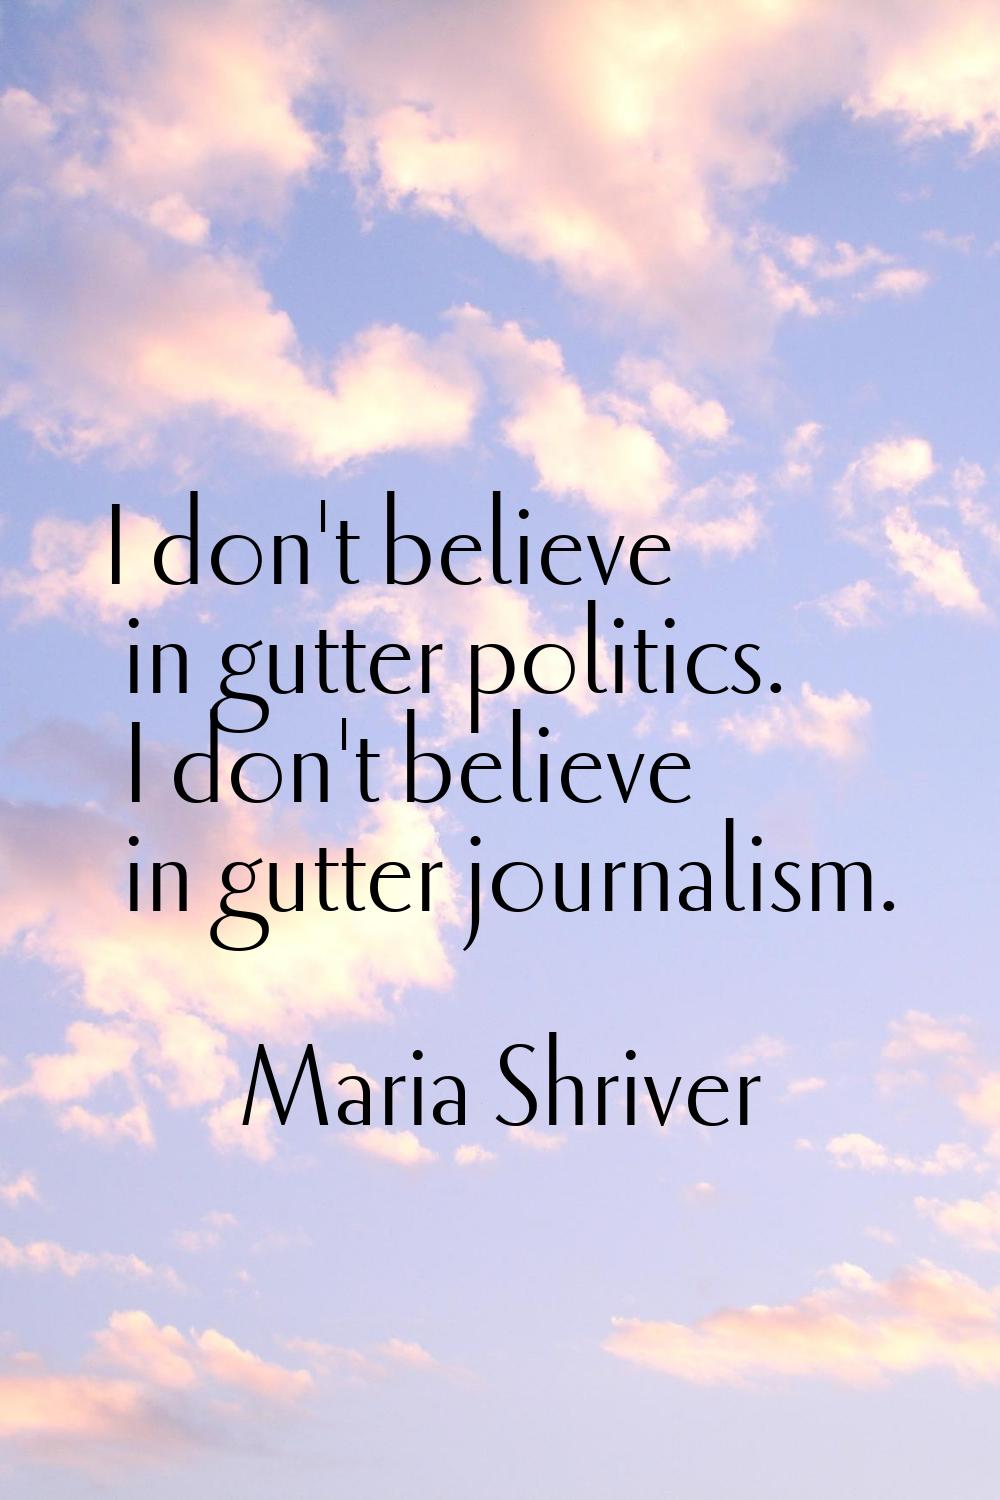 I don't believe in gutter politics. I don't believe in gutter journalism.